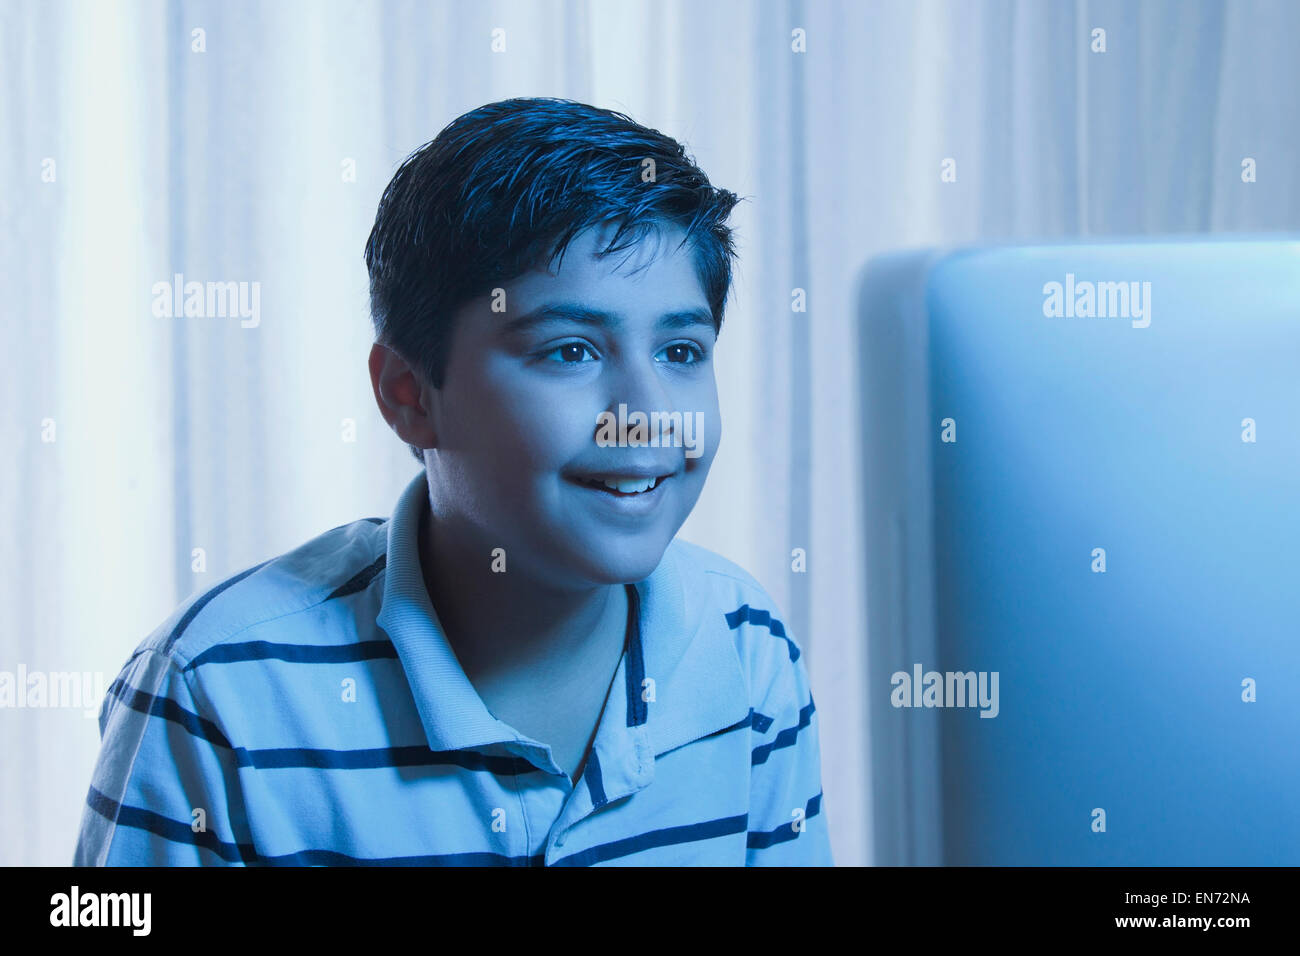 Jeune garçon à la recherche à l'écran d'un ordinateur Banque D'Images